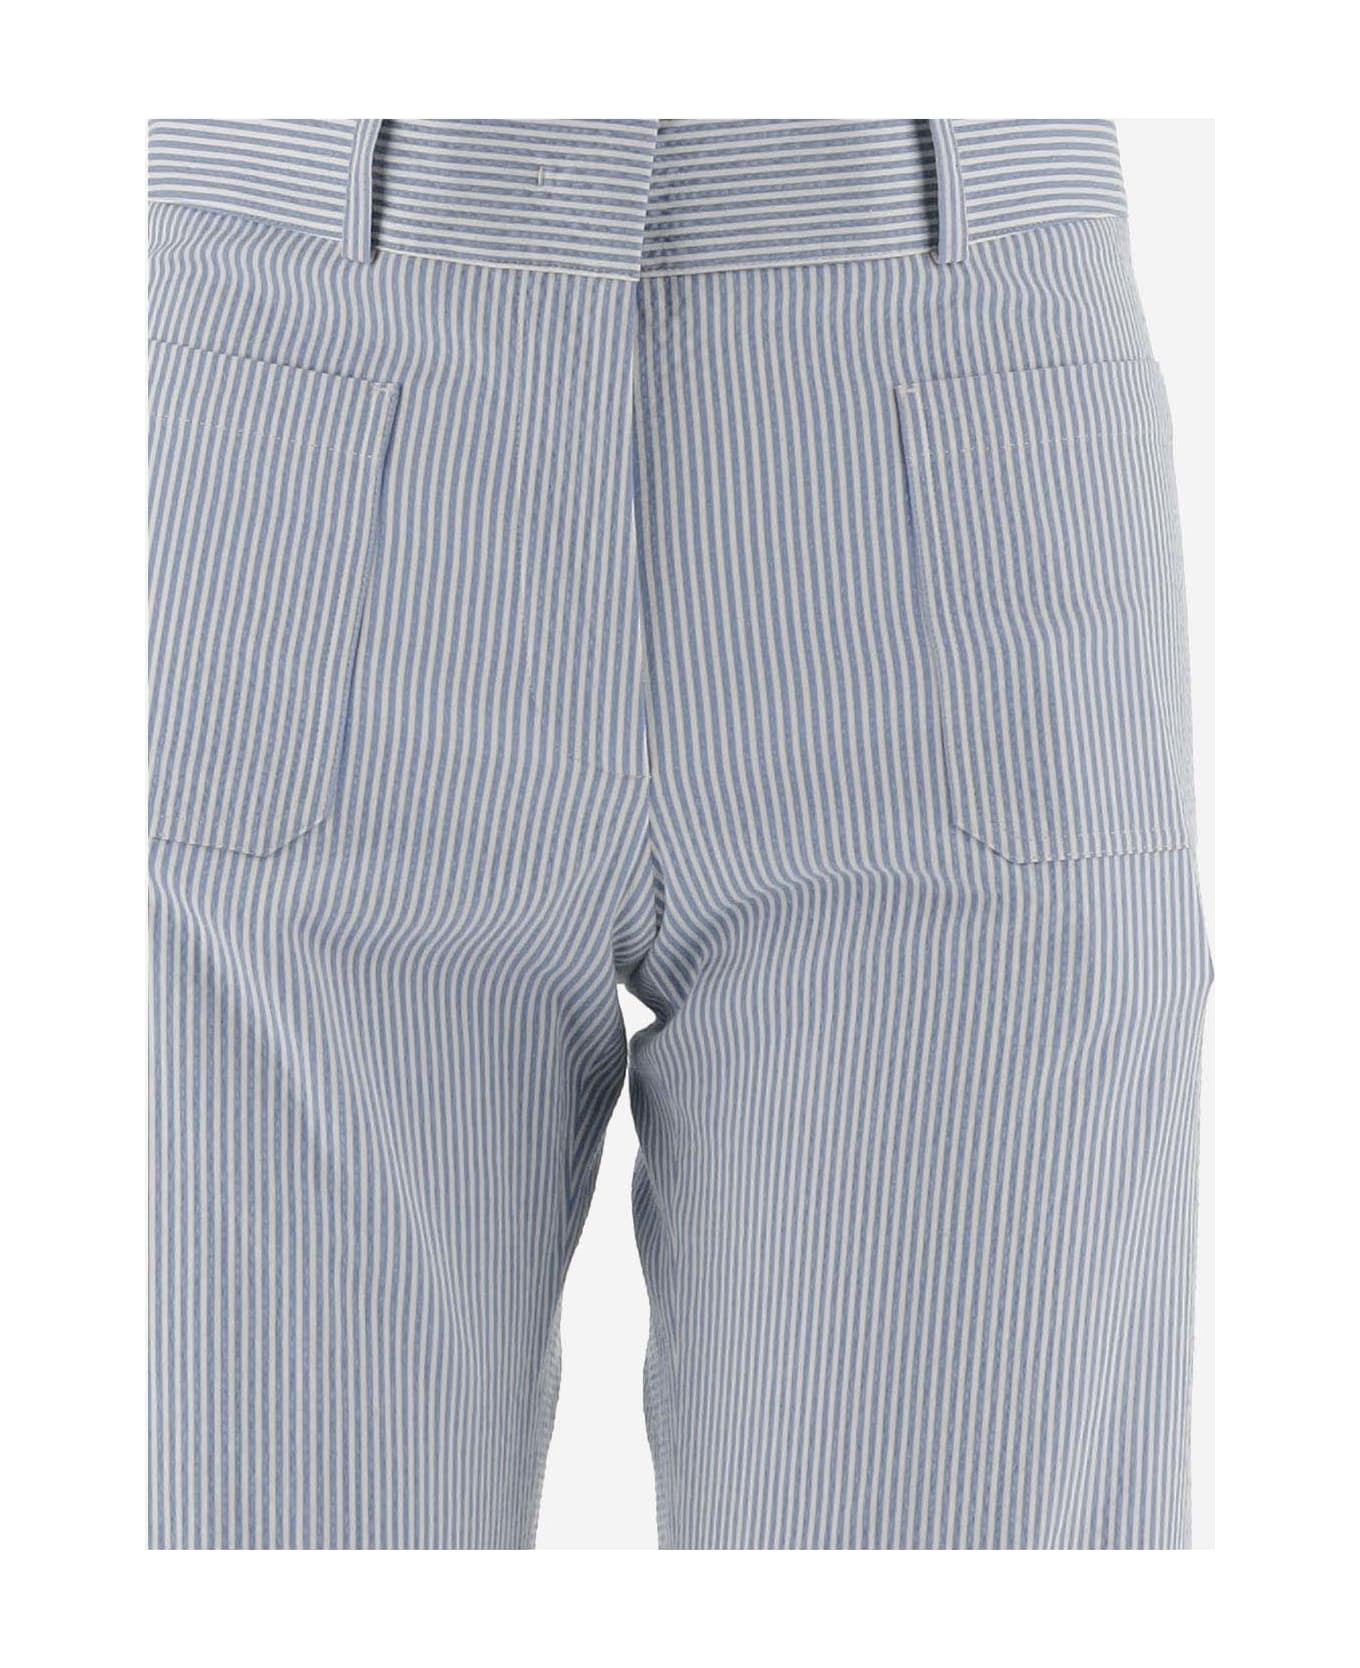 QL2 Stretch Cotton Wide Leg Pants - Grey